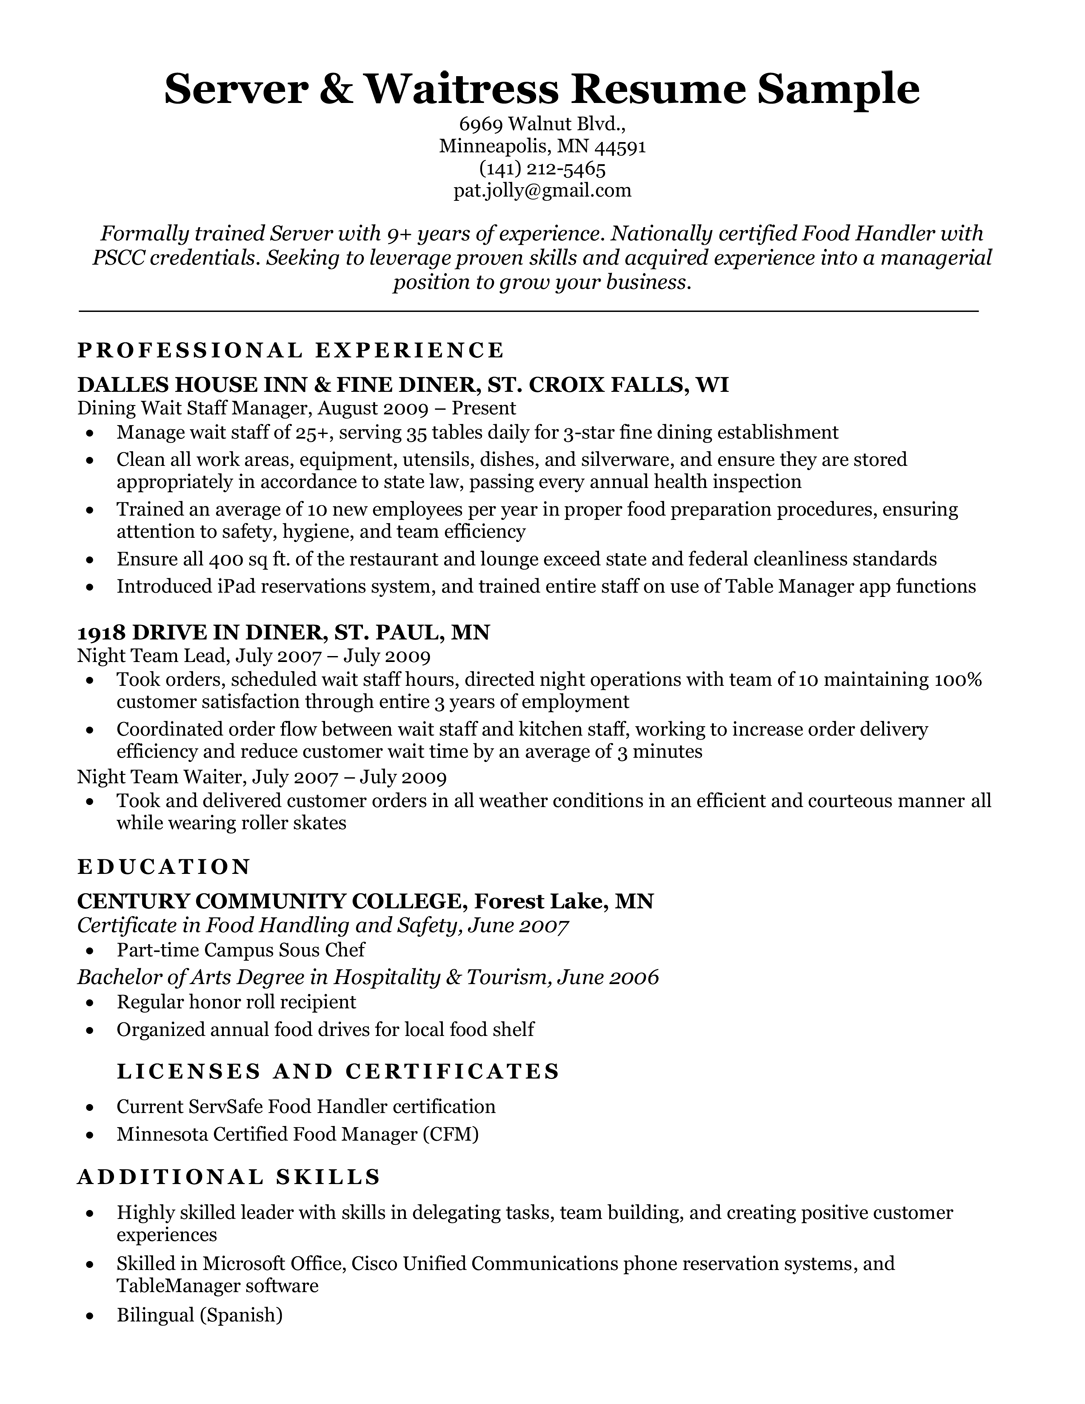 Server & waitress resume sample